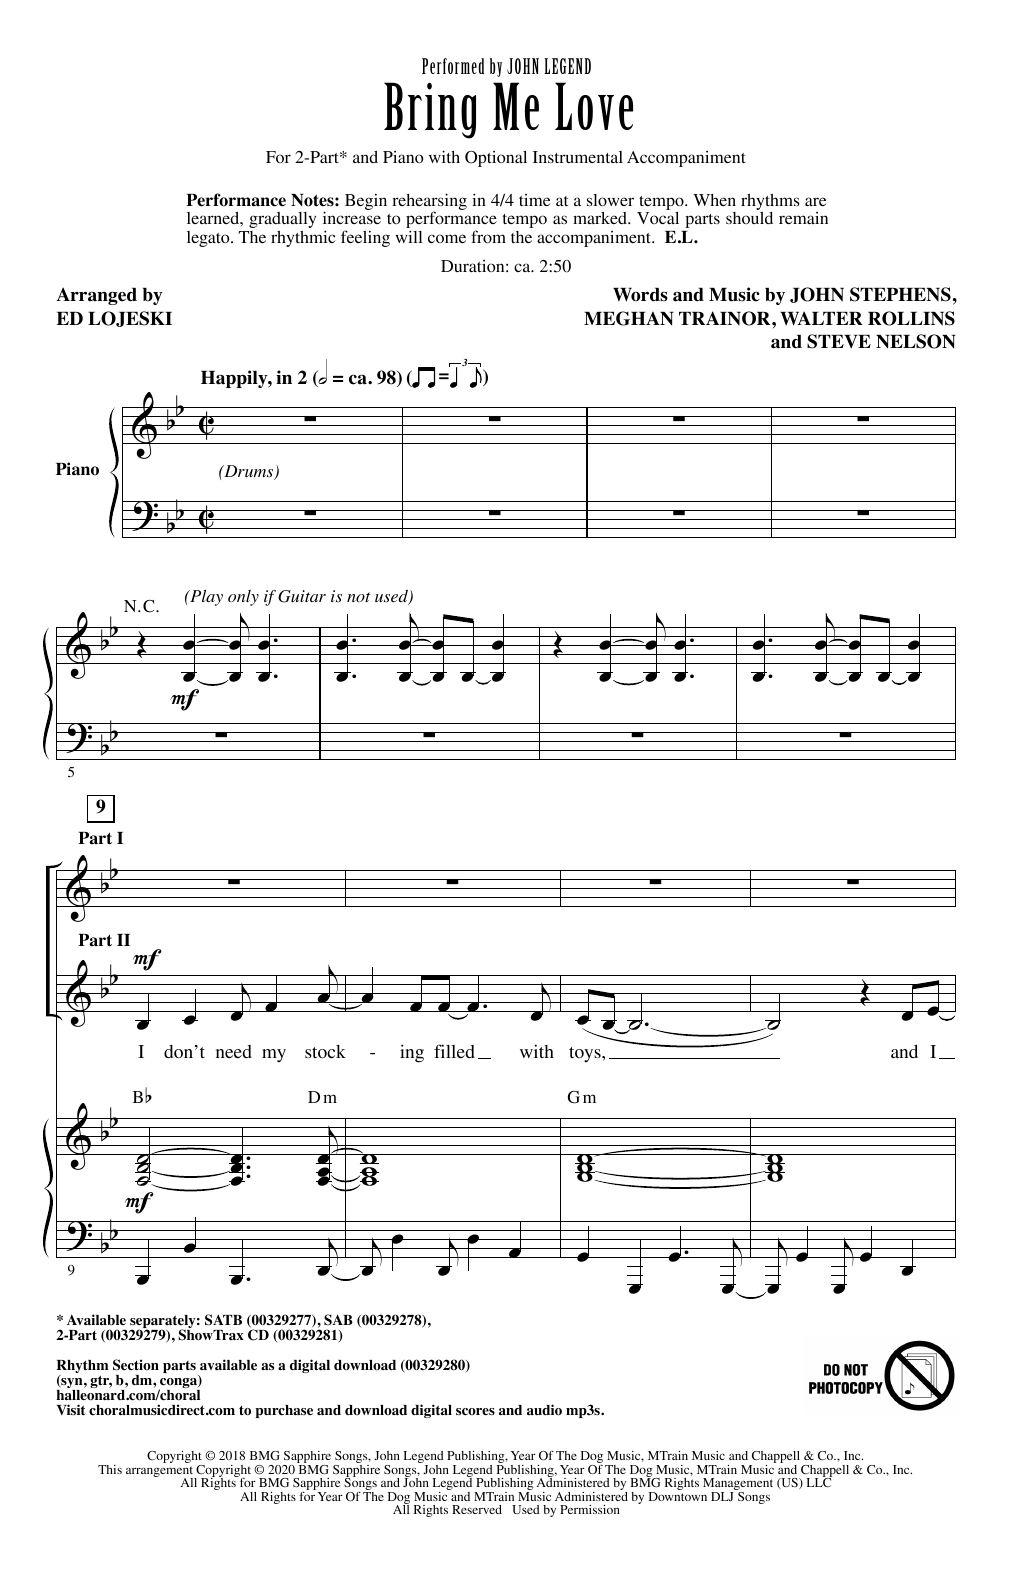 John Legend Bring Me Love (arr. Ed Lojeski) Sheet Music Notes & Chords for 2-Part Choir - Download or Print PDF